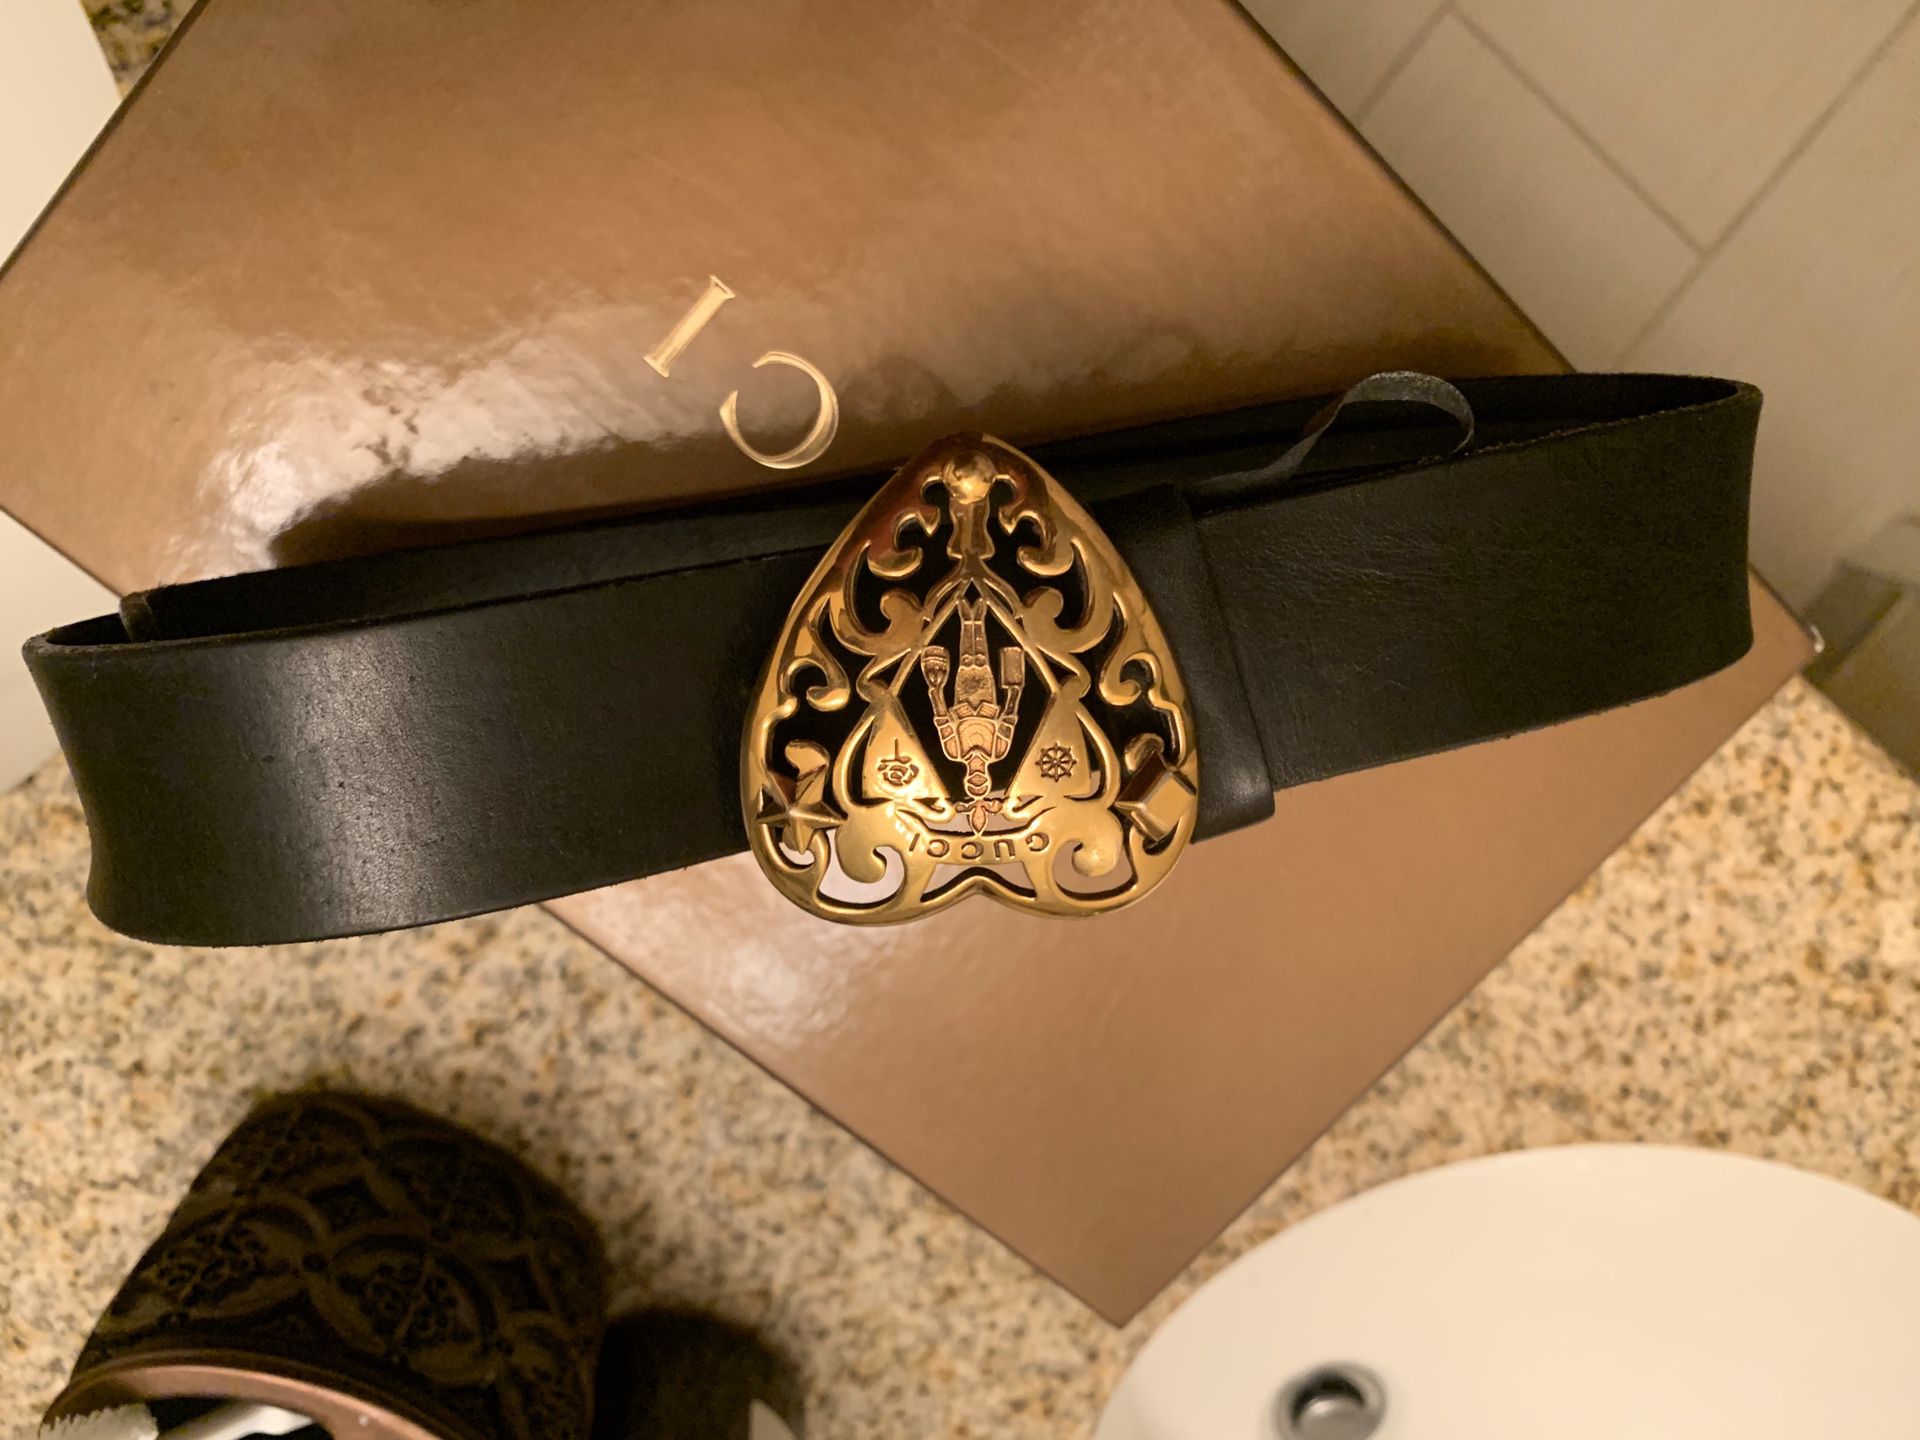 Gucci vintage belt